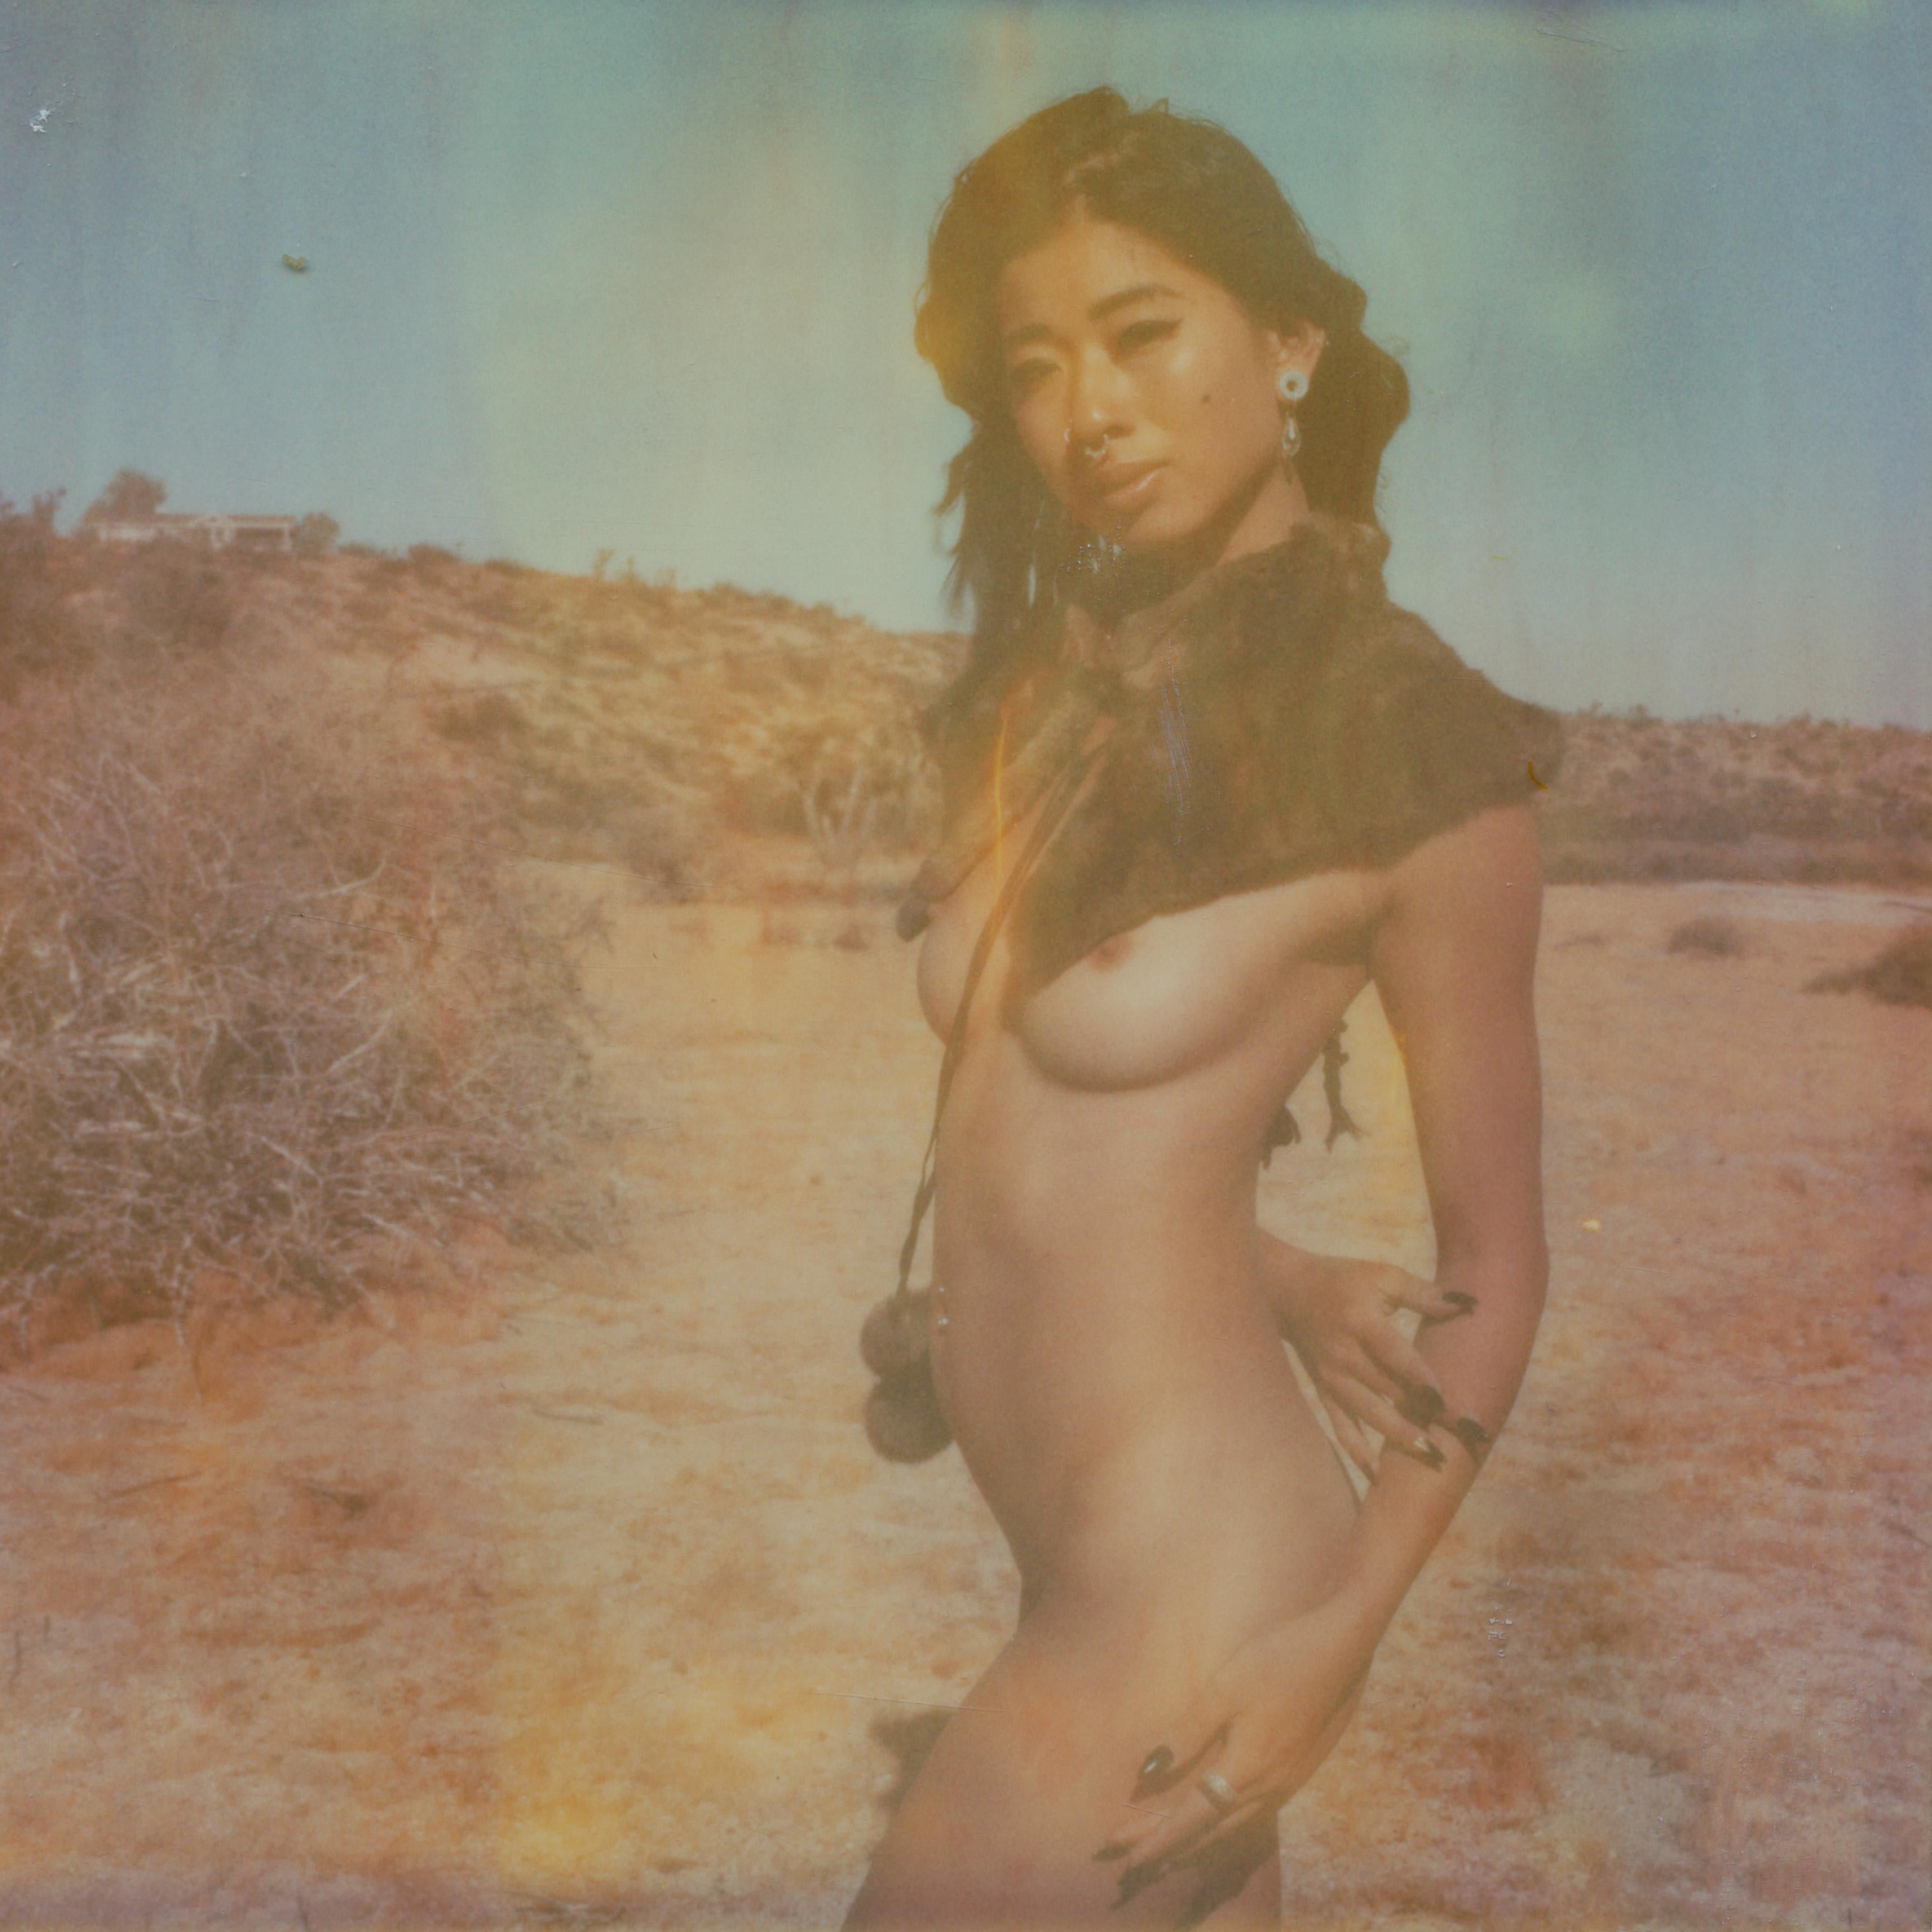 Kirsten Thys van den Audenaerde Nude Photograph - Flame - Contemporary, Polaroid, Nude, 21st Century, Joshua Tree